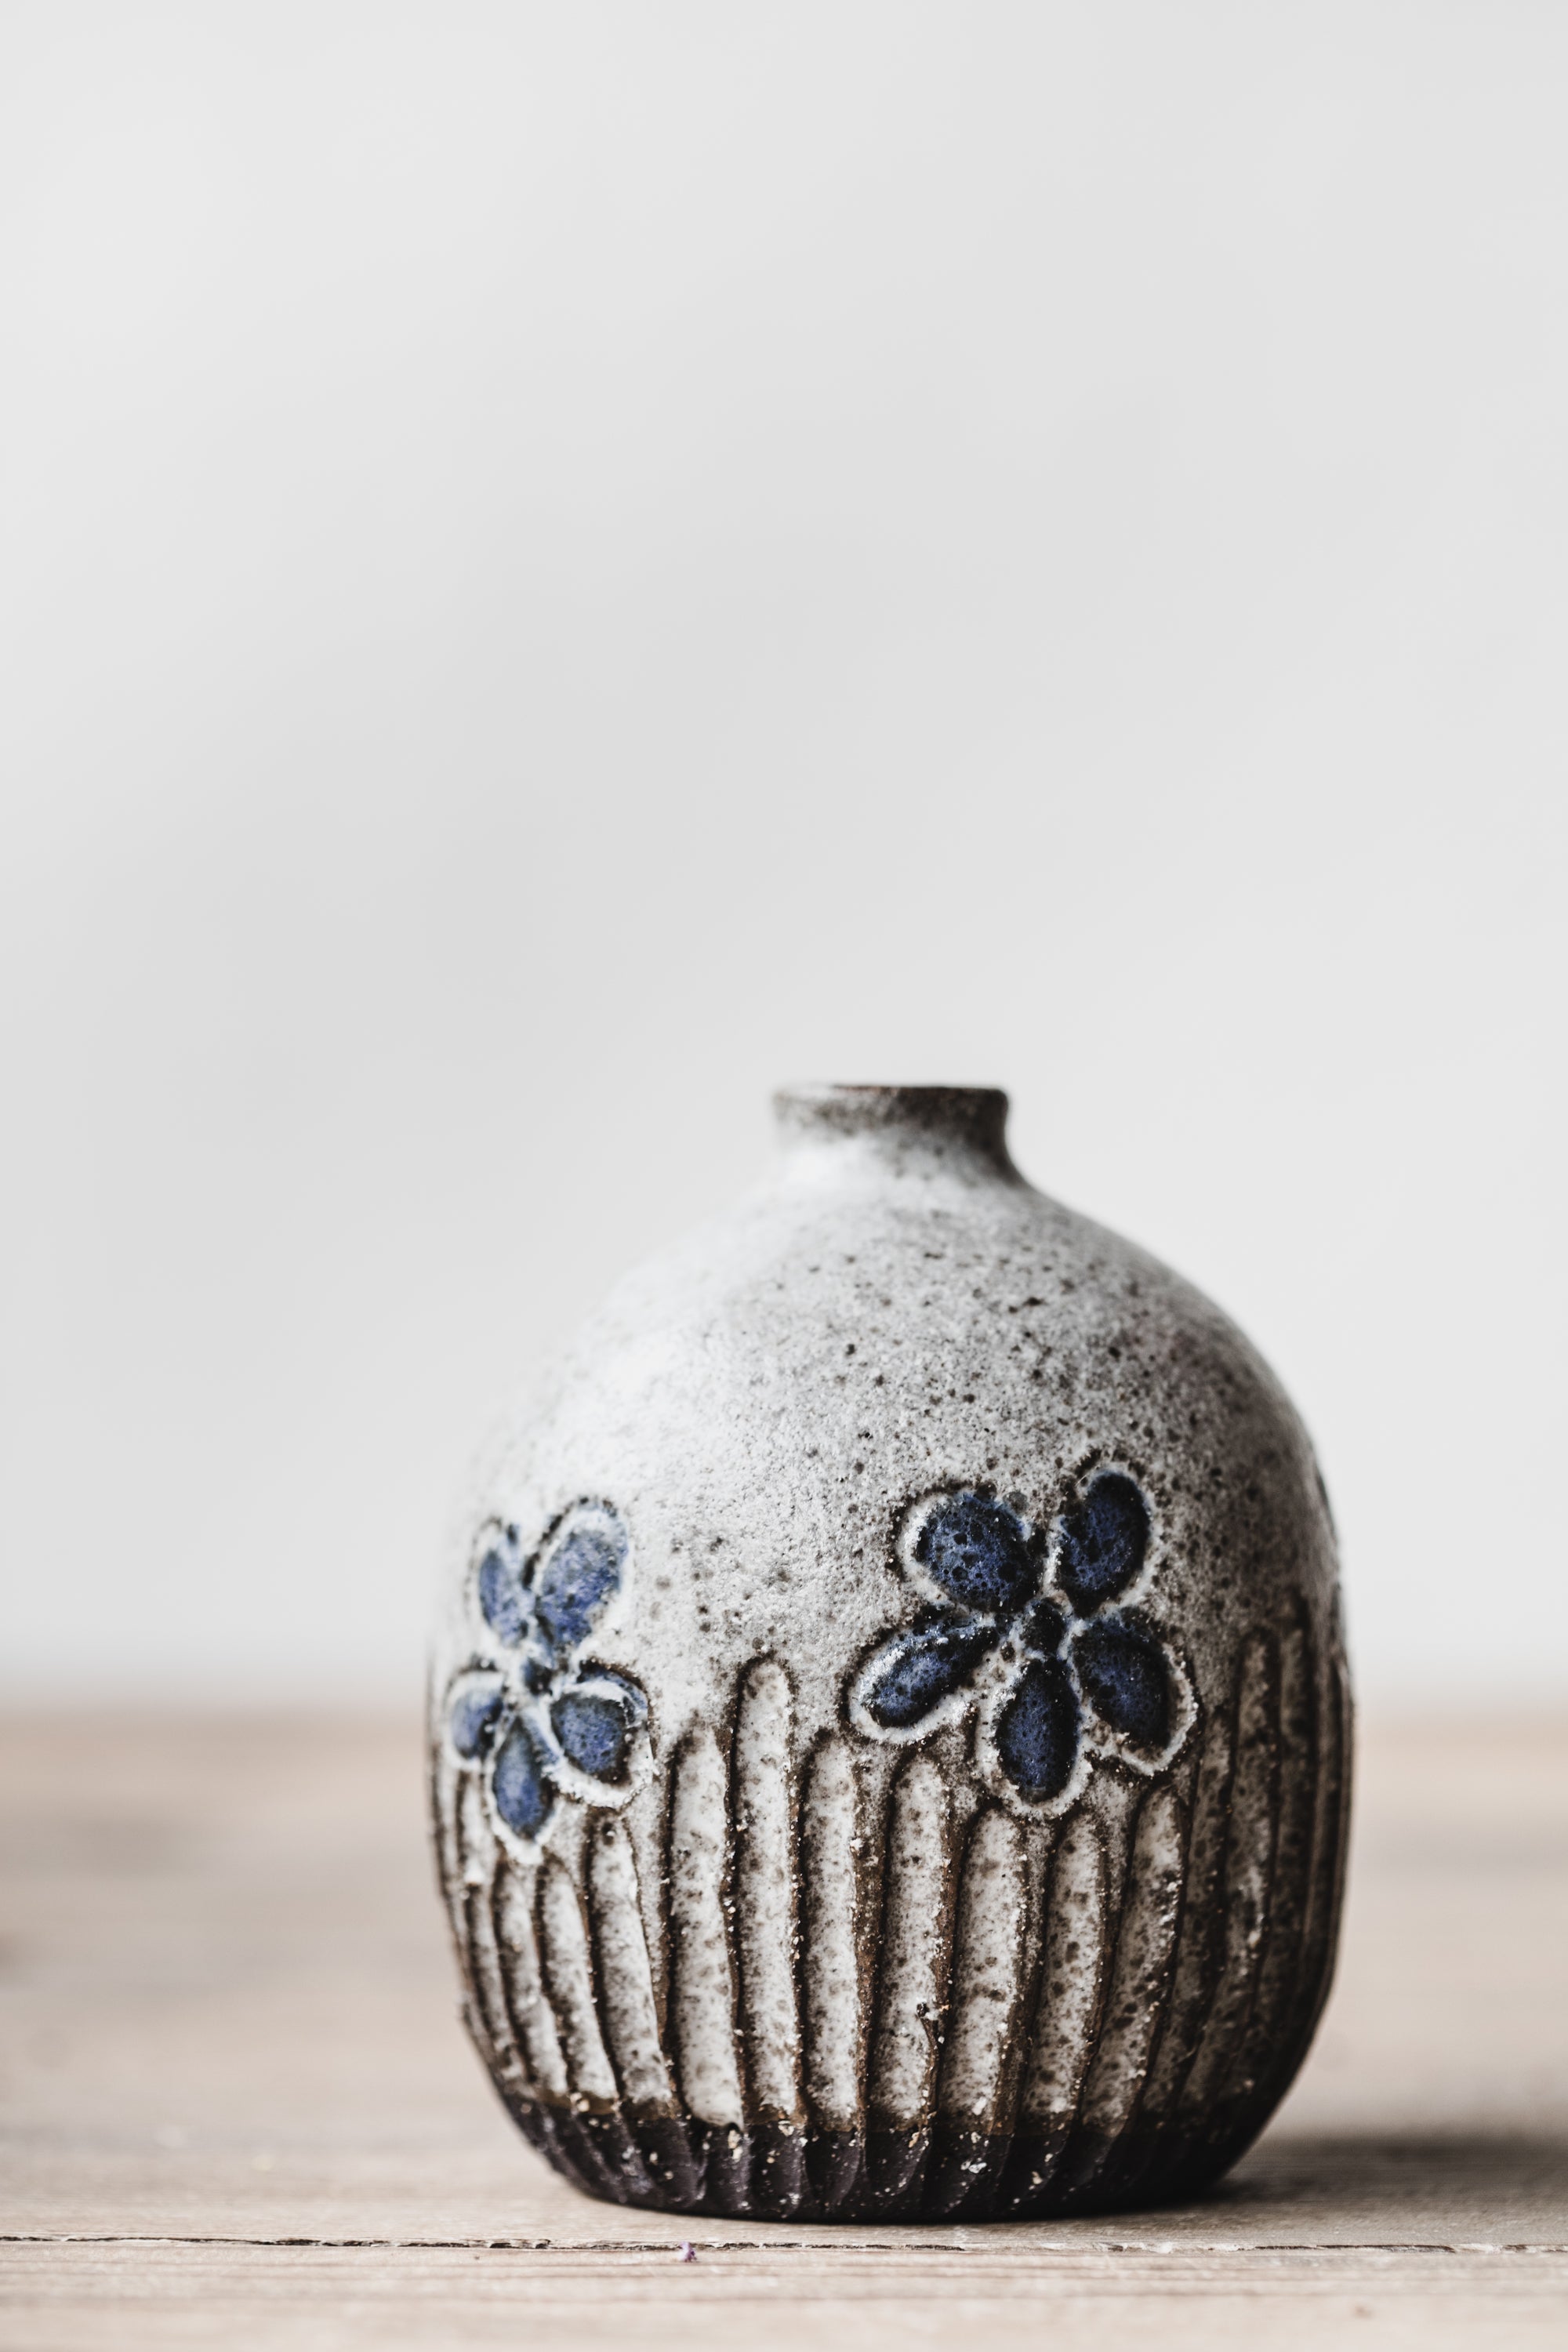 Black earth rustic little carved flower bud vase